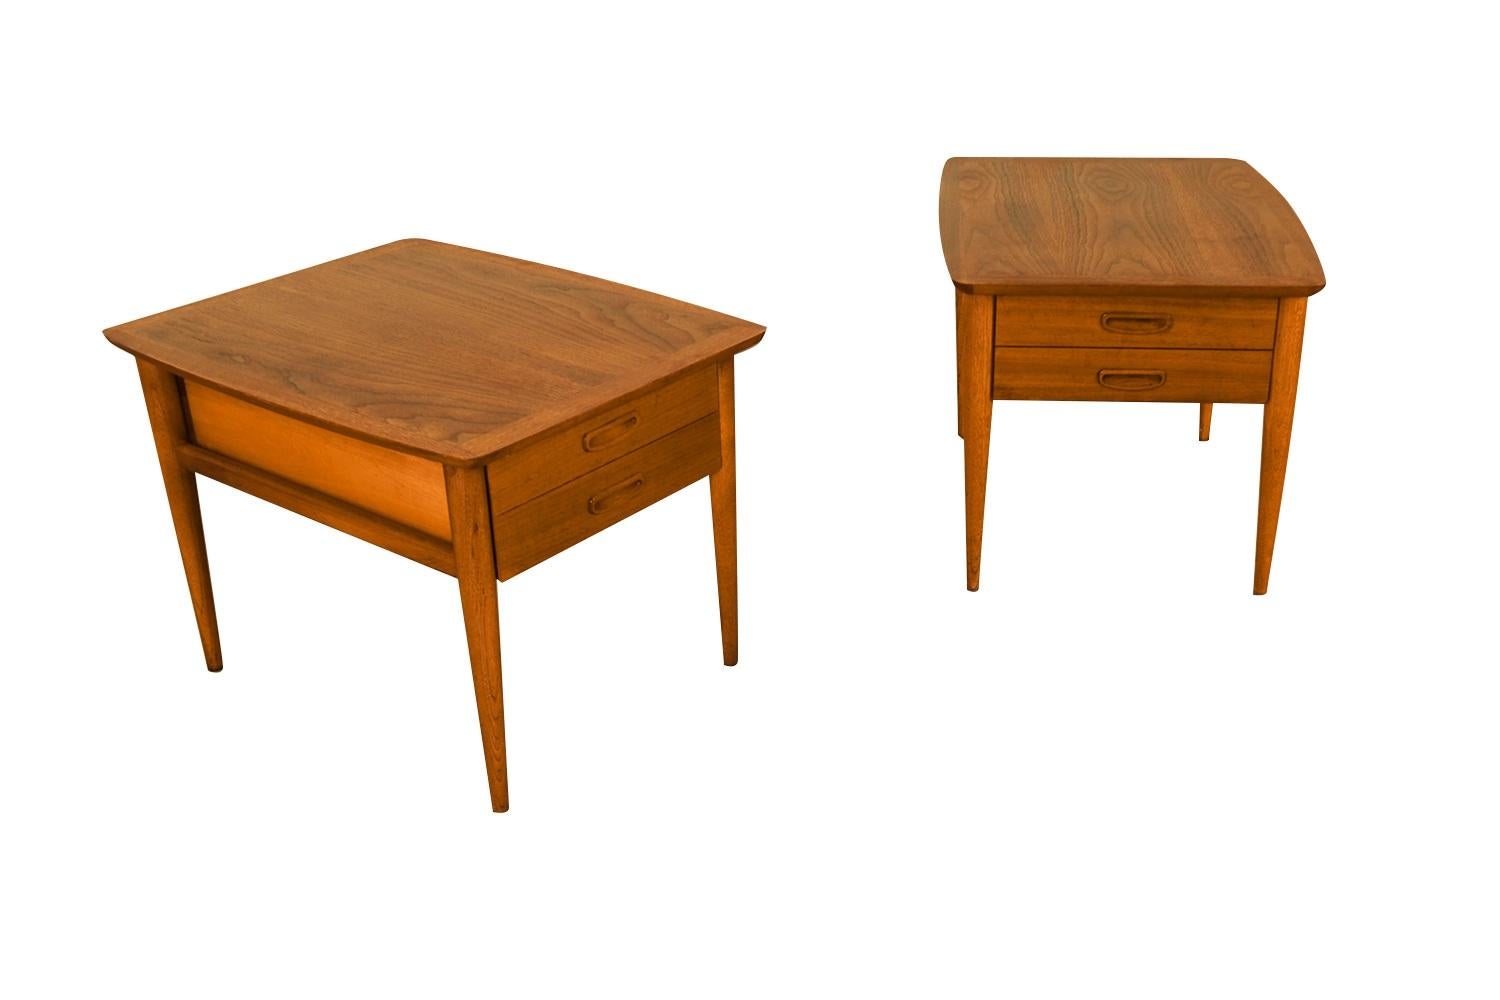 Ein schönes Paar Beistelltische / Nachttische von Lane's Altavista Furniture Co. Alle sind durchweg in gutem Zustand. Mit einer atemberaubenden Holzmaserung auf der Oberseite und abgerundeten Ecken, über einer Schublade, die mit Sculpted Pulls wie